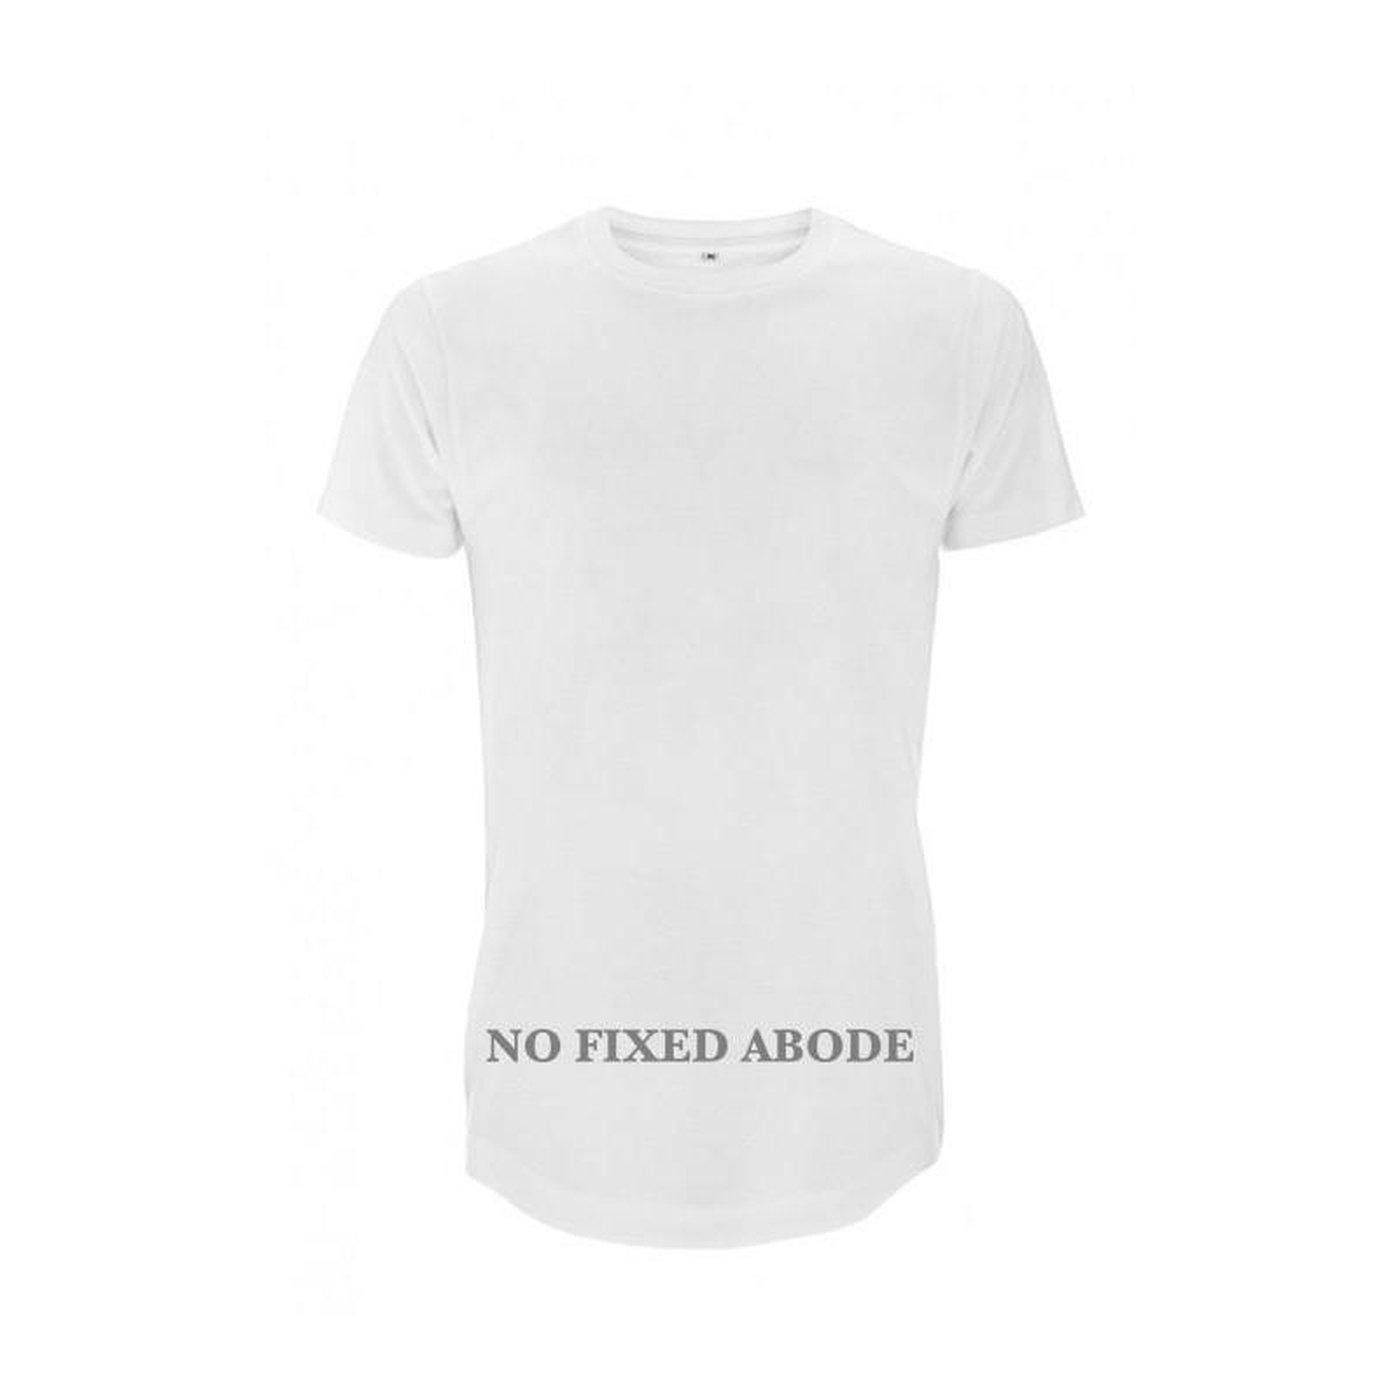 NO FIXED ABODE,Long Men's T-Shirt No Fixed Abode,T-Shirt,S / White / 100% Cotton